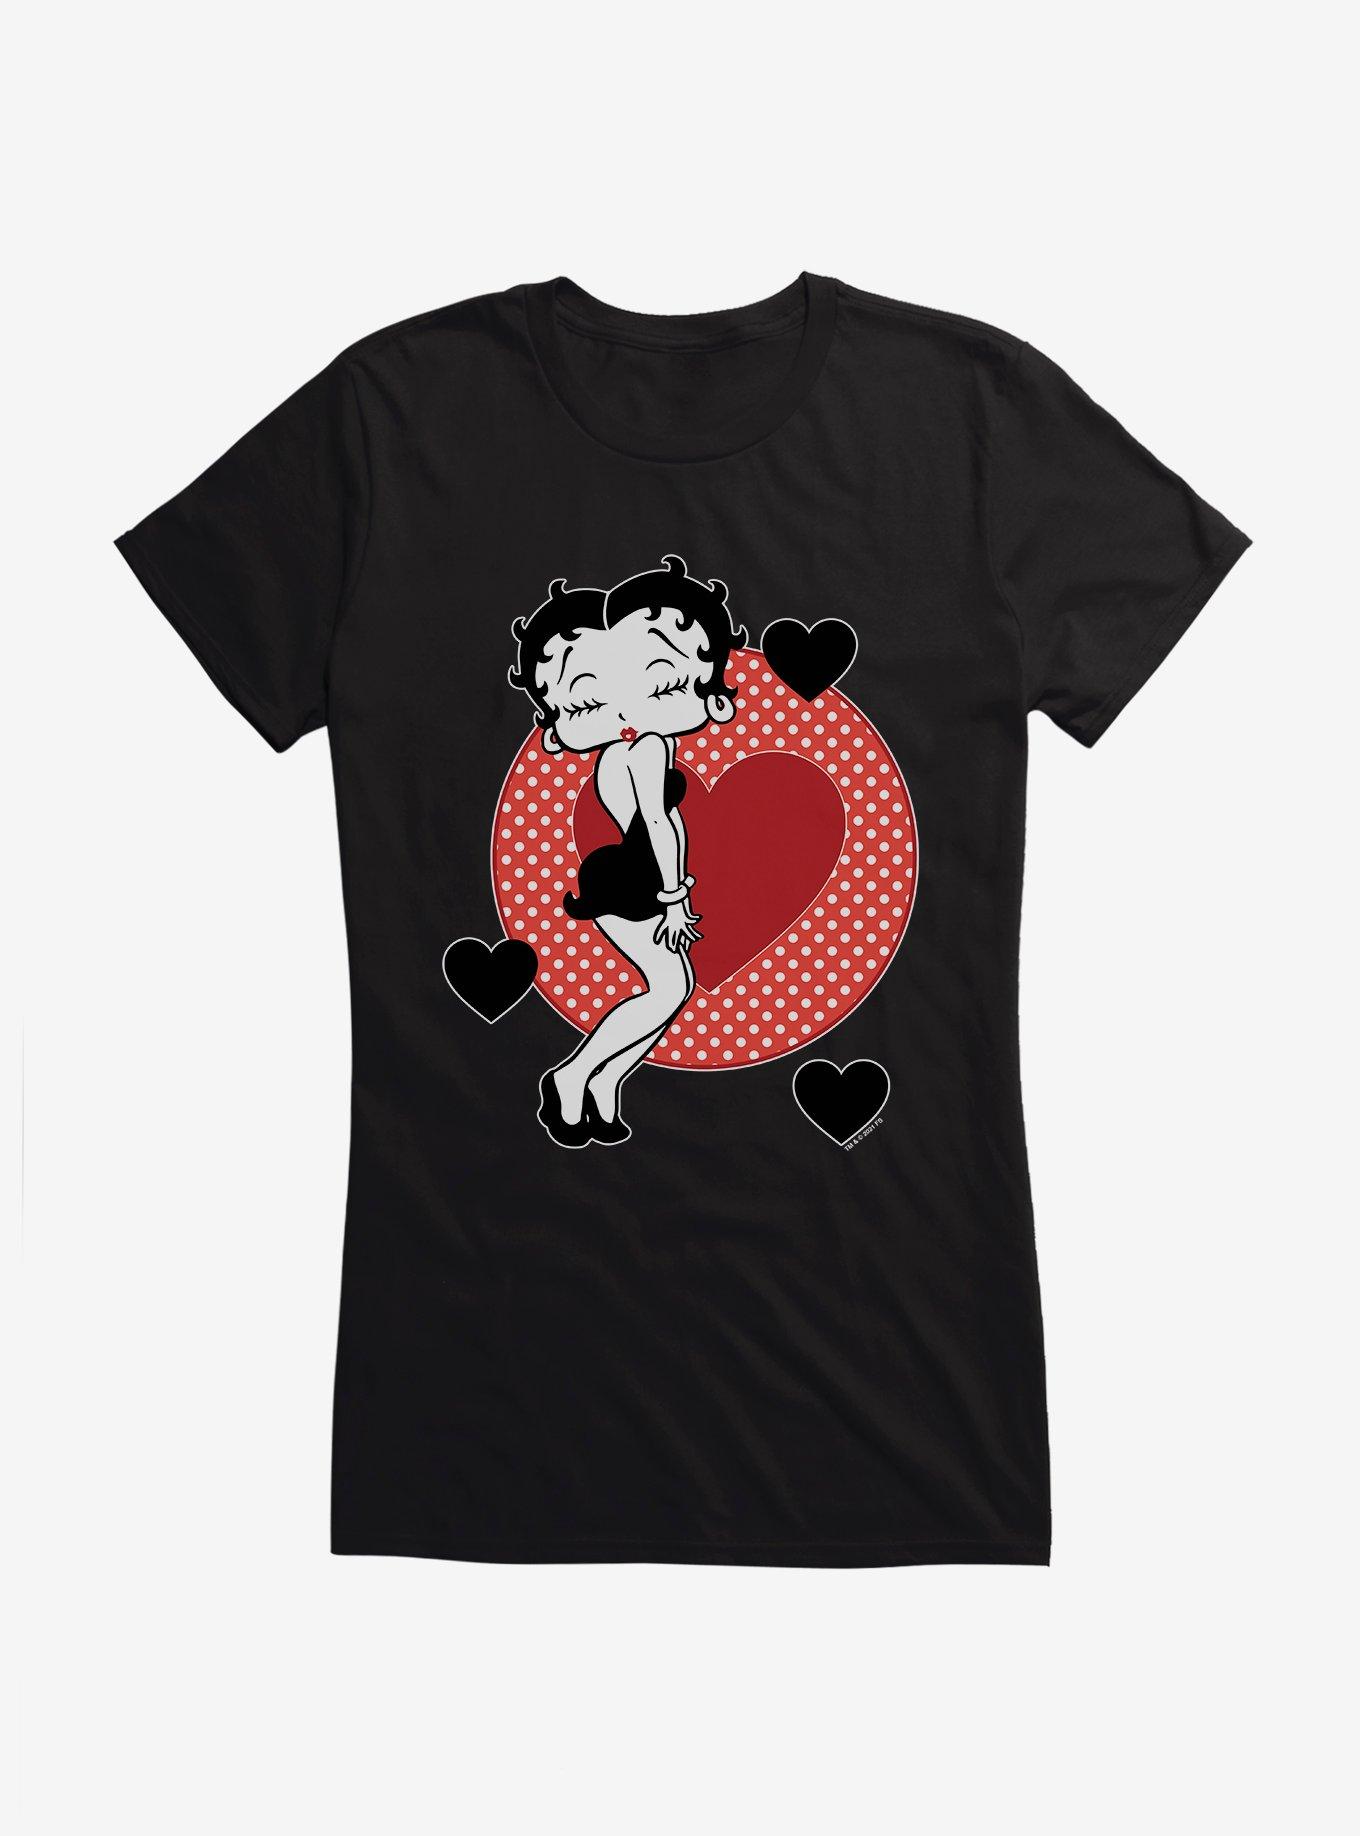 Betty Boop Pucker Up Girls T-Shirt